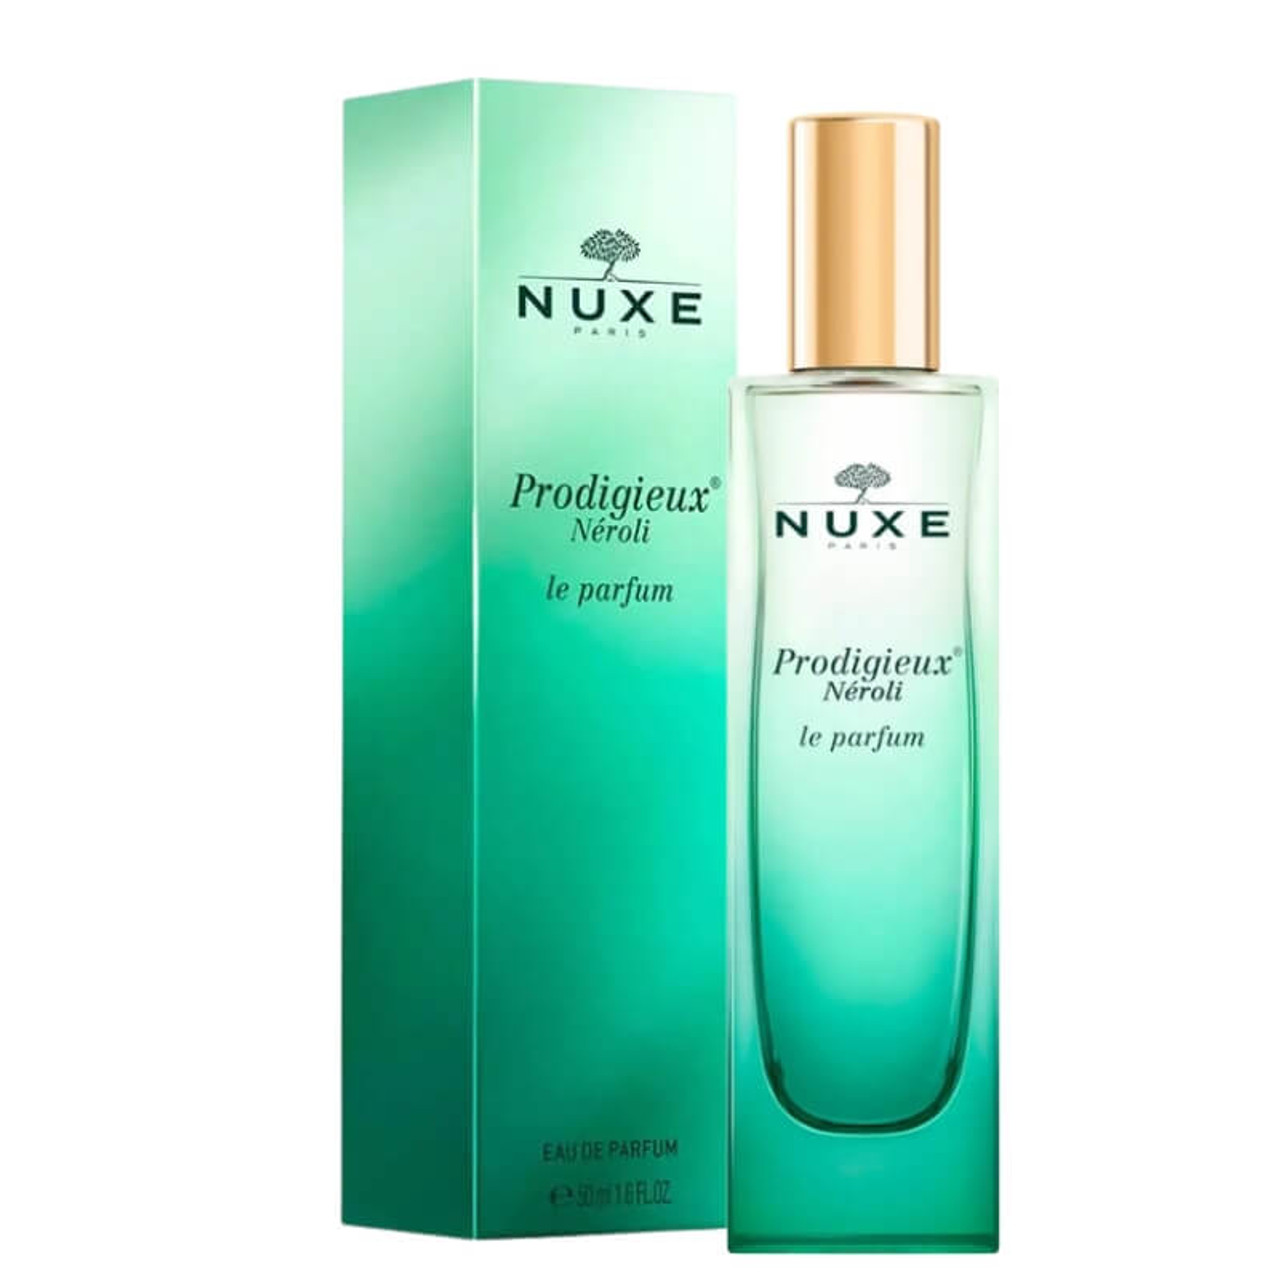 NUXE Prodigieux Neroli Le Parfum Eau de Parfum 50ml